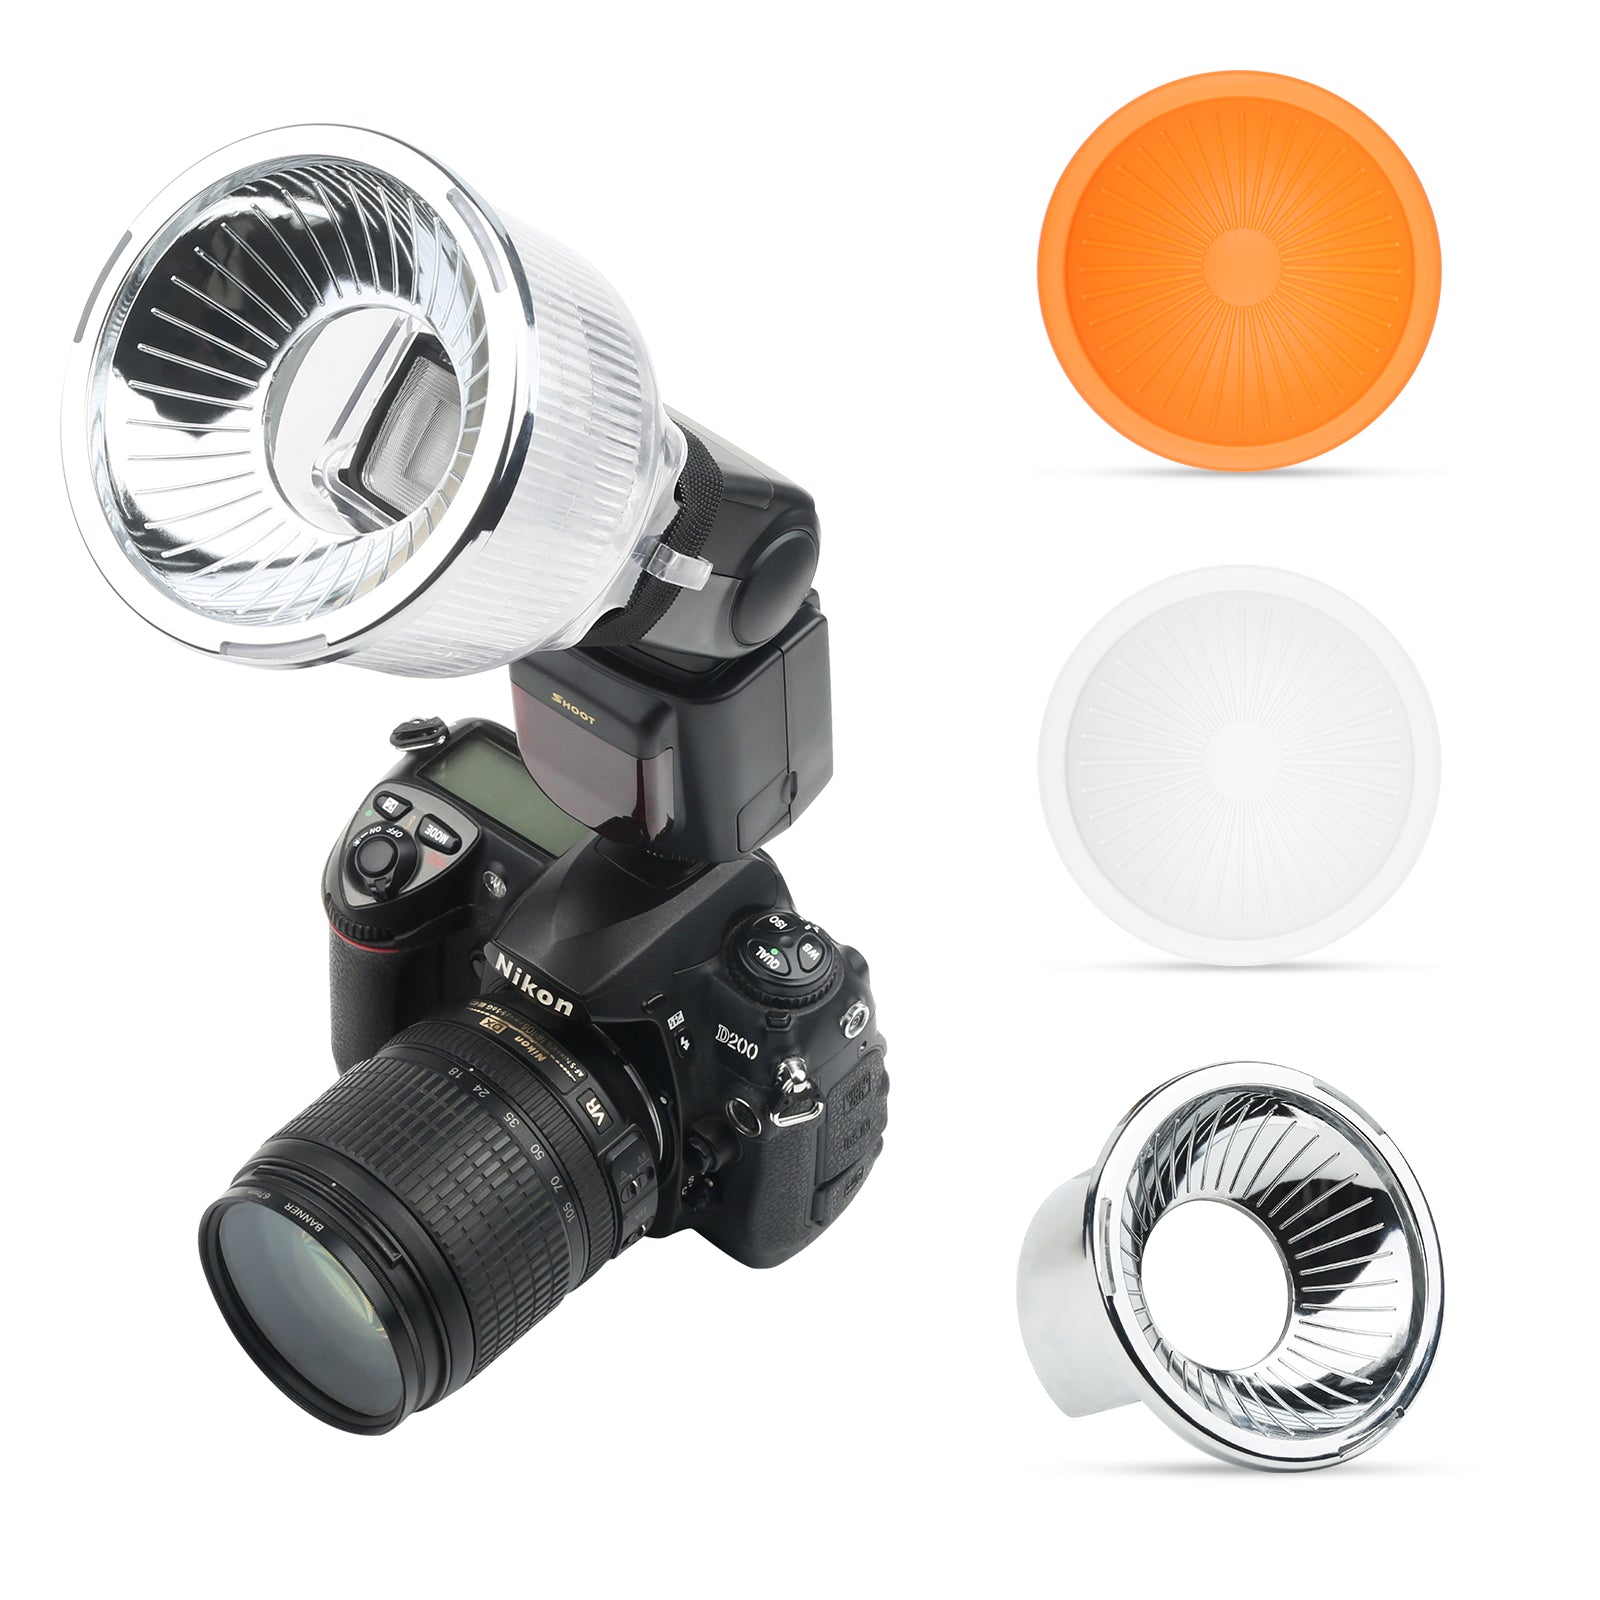 Shoot XT-508 Lambancy Dome Flash Diffuser for Canon Eos 1200D Nikon D3400 D5300 D750 Sony A6000 X3000 DSLR Camera Fotografia Accessory